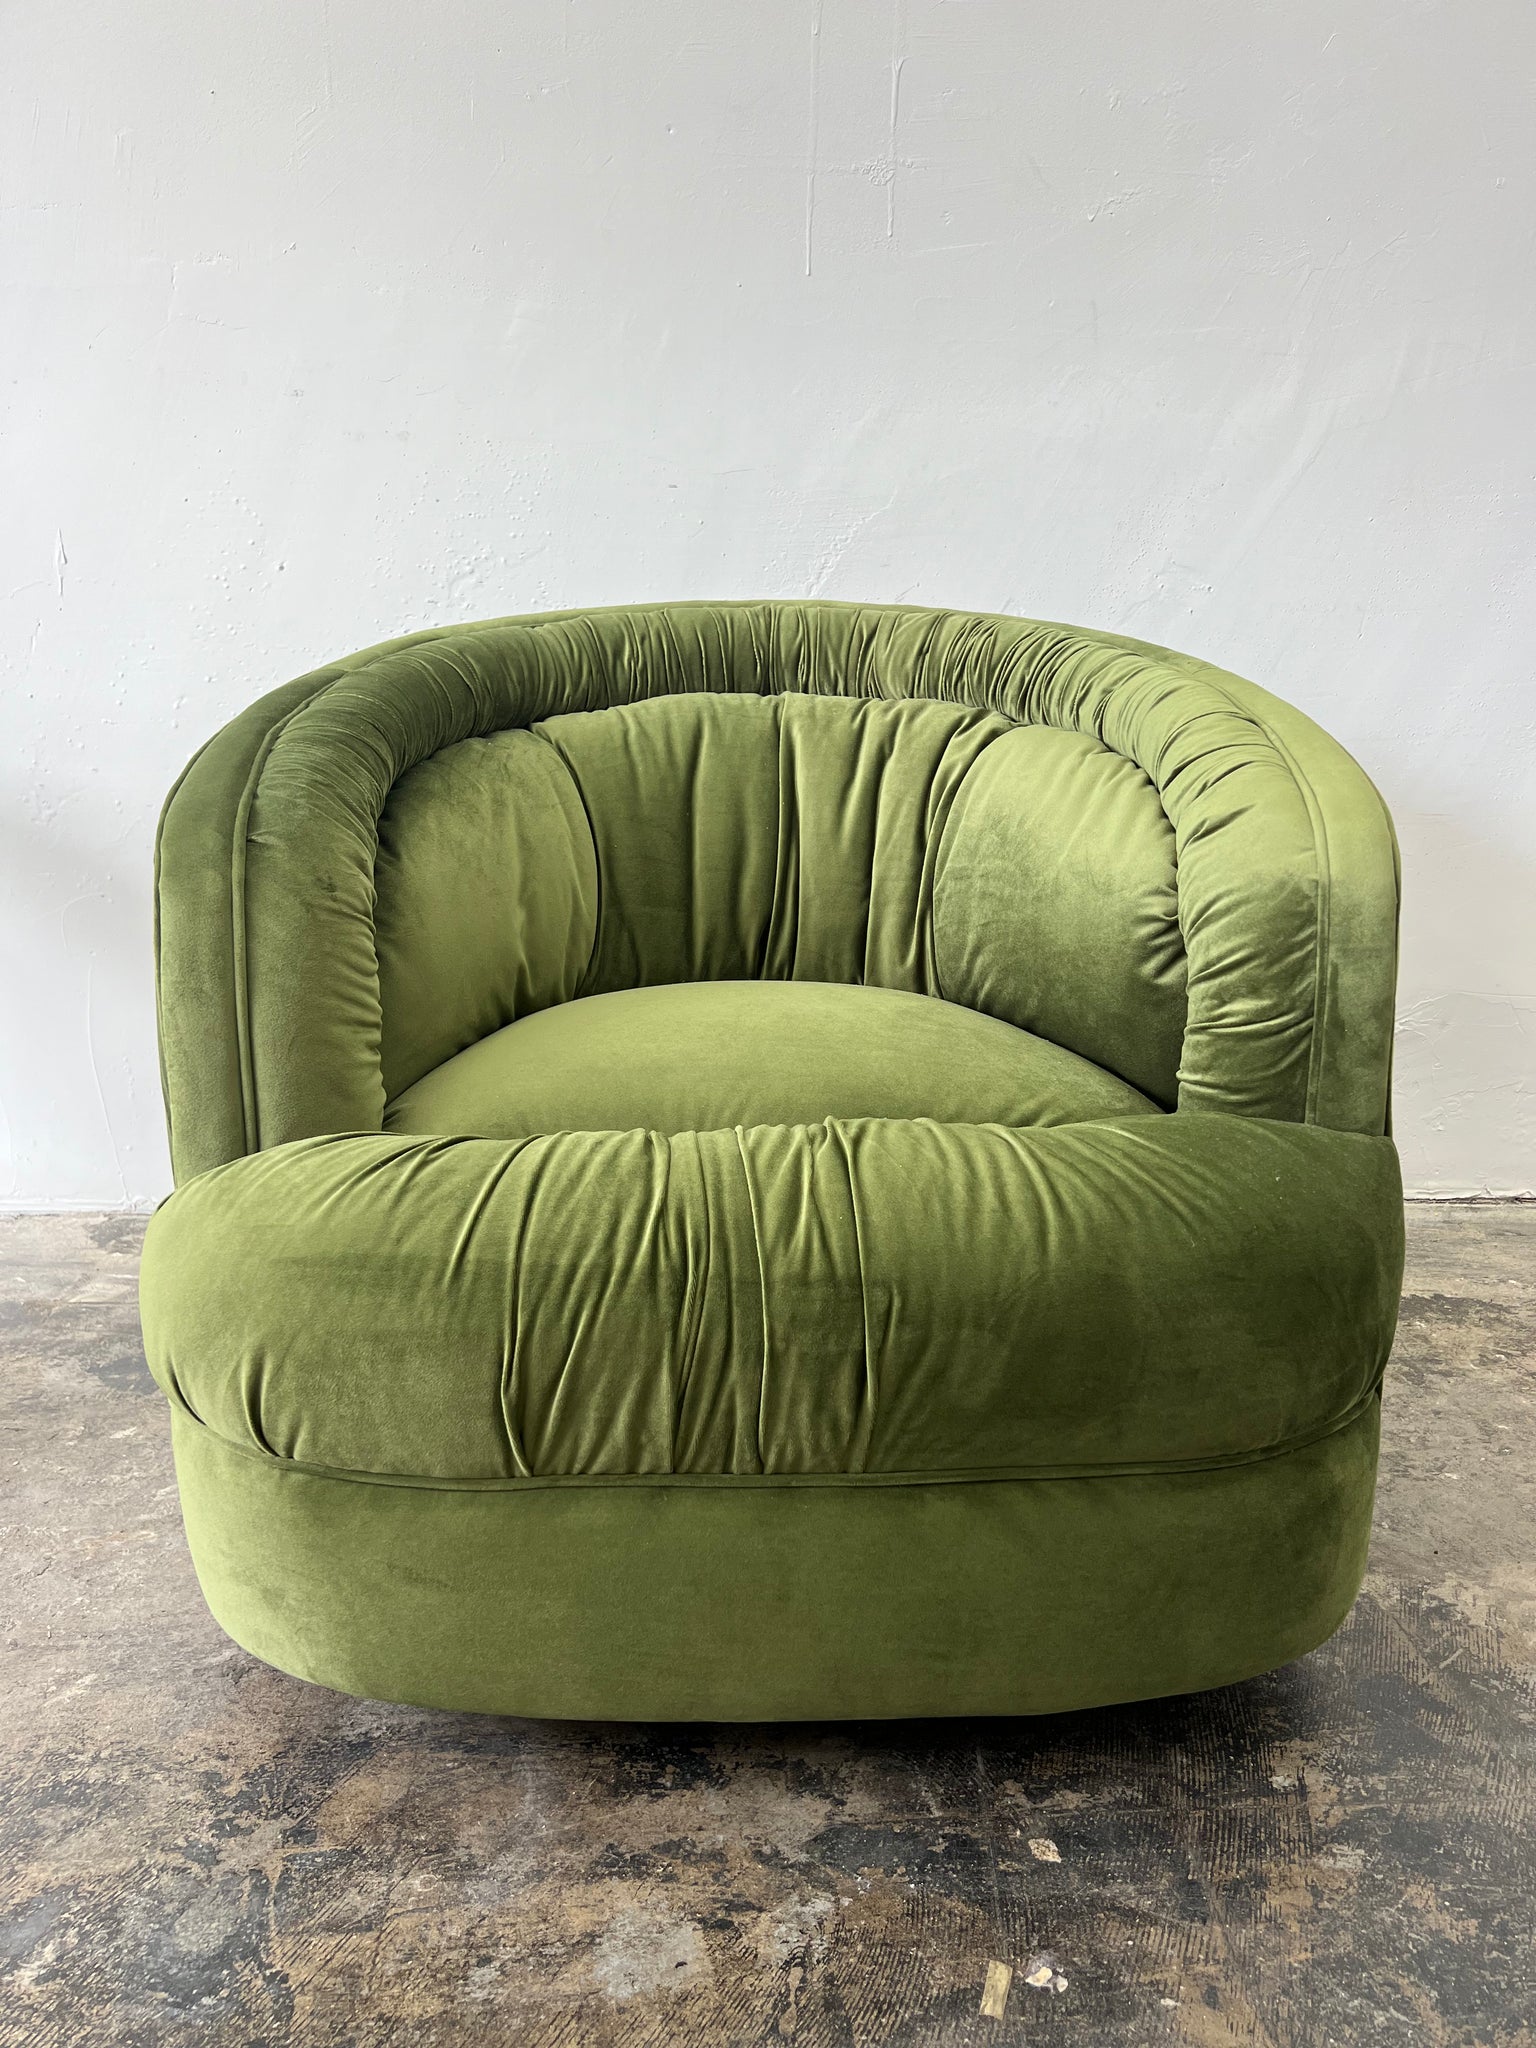 1970s Reupholstered Swivel Chair in green velvet